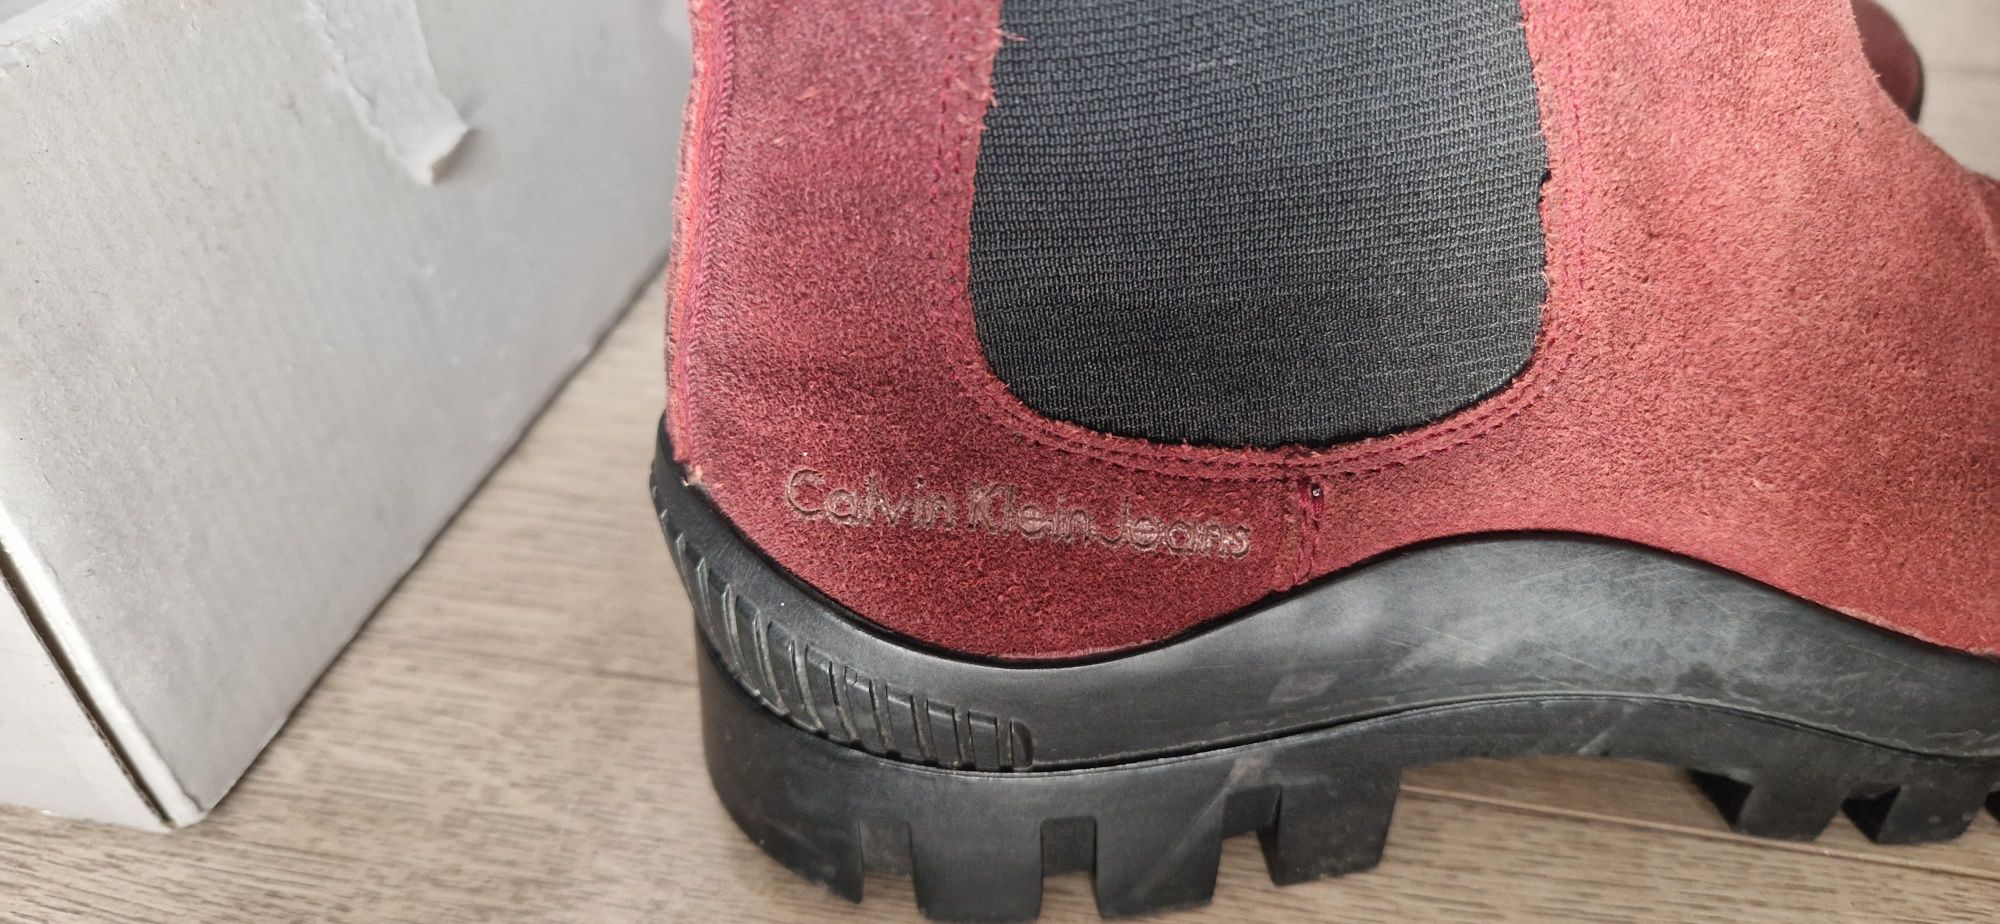 Buty sztyblety botki kozaczki Calvin Klein r. 39, skóra  kolor bordowy